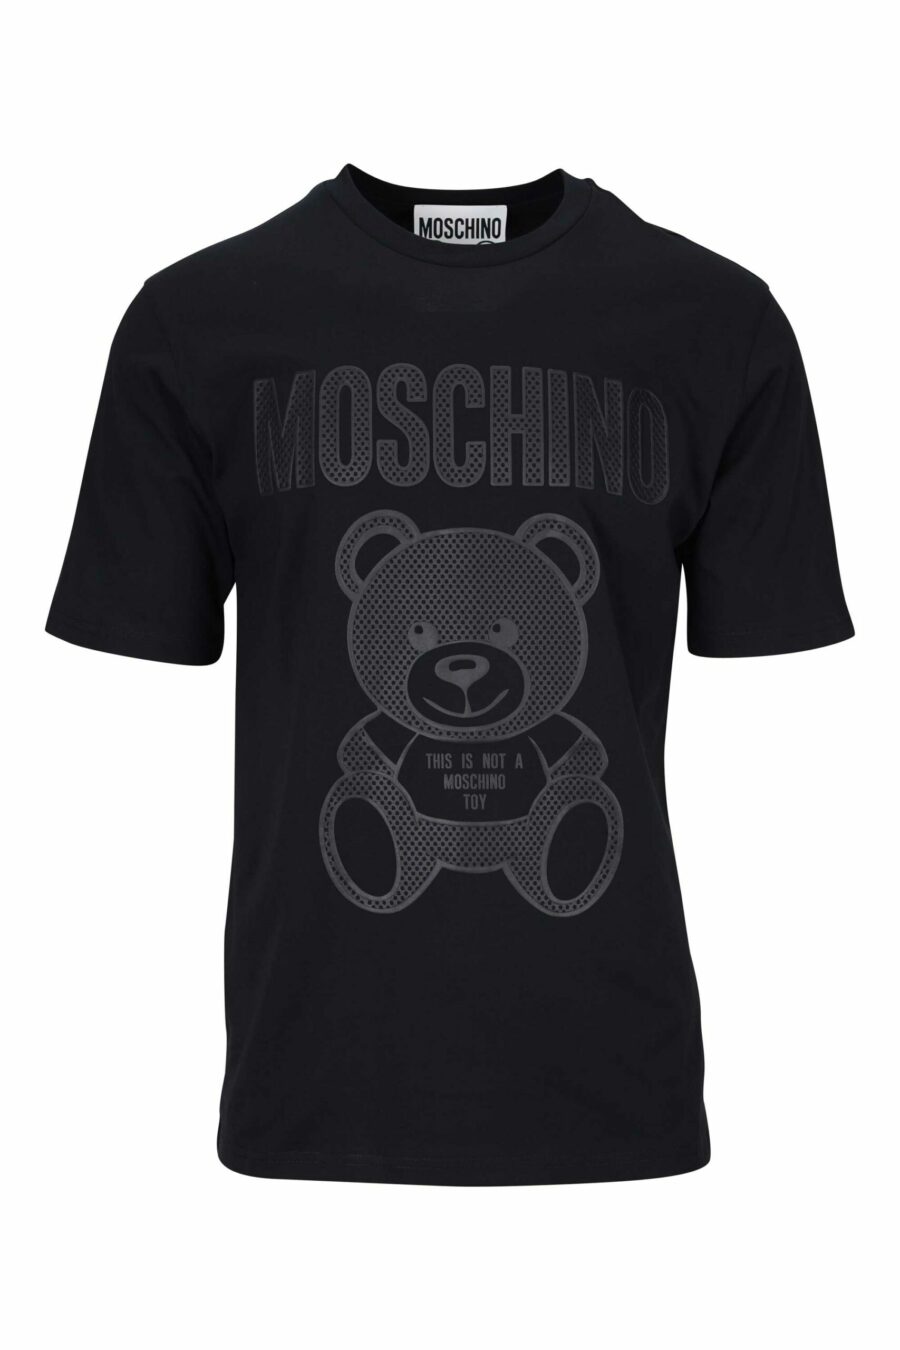 Camiseta negra con maxilogo oso en puntos monocromático - 667113455754 scaled